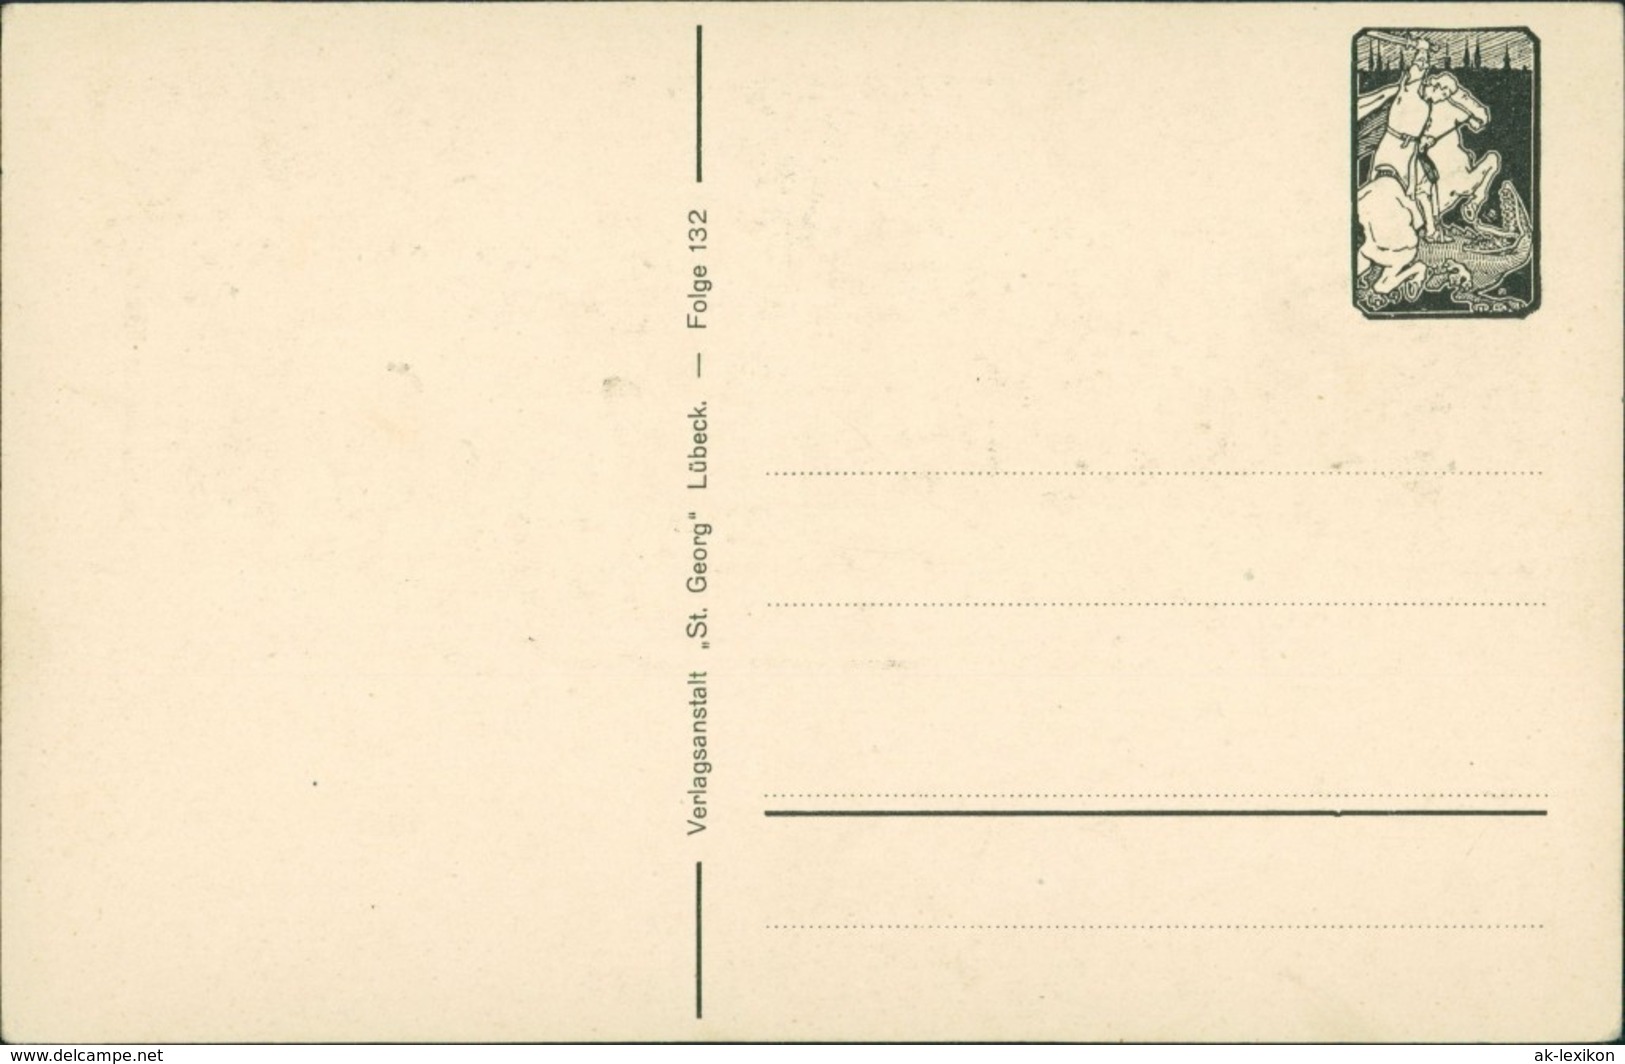  Scherenschnitt/Schattenschnitt-Ansichtskarten Künstlerkarte September 1922 - Scherenschnitt - Silhouette